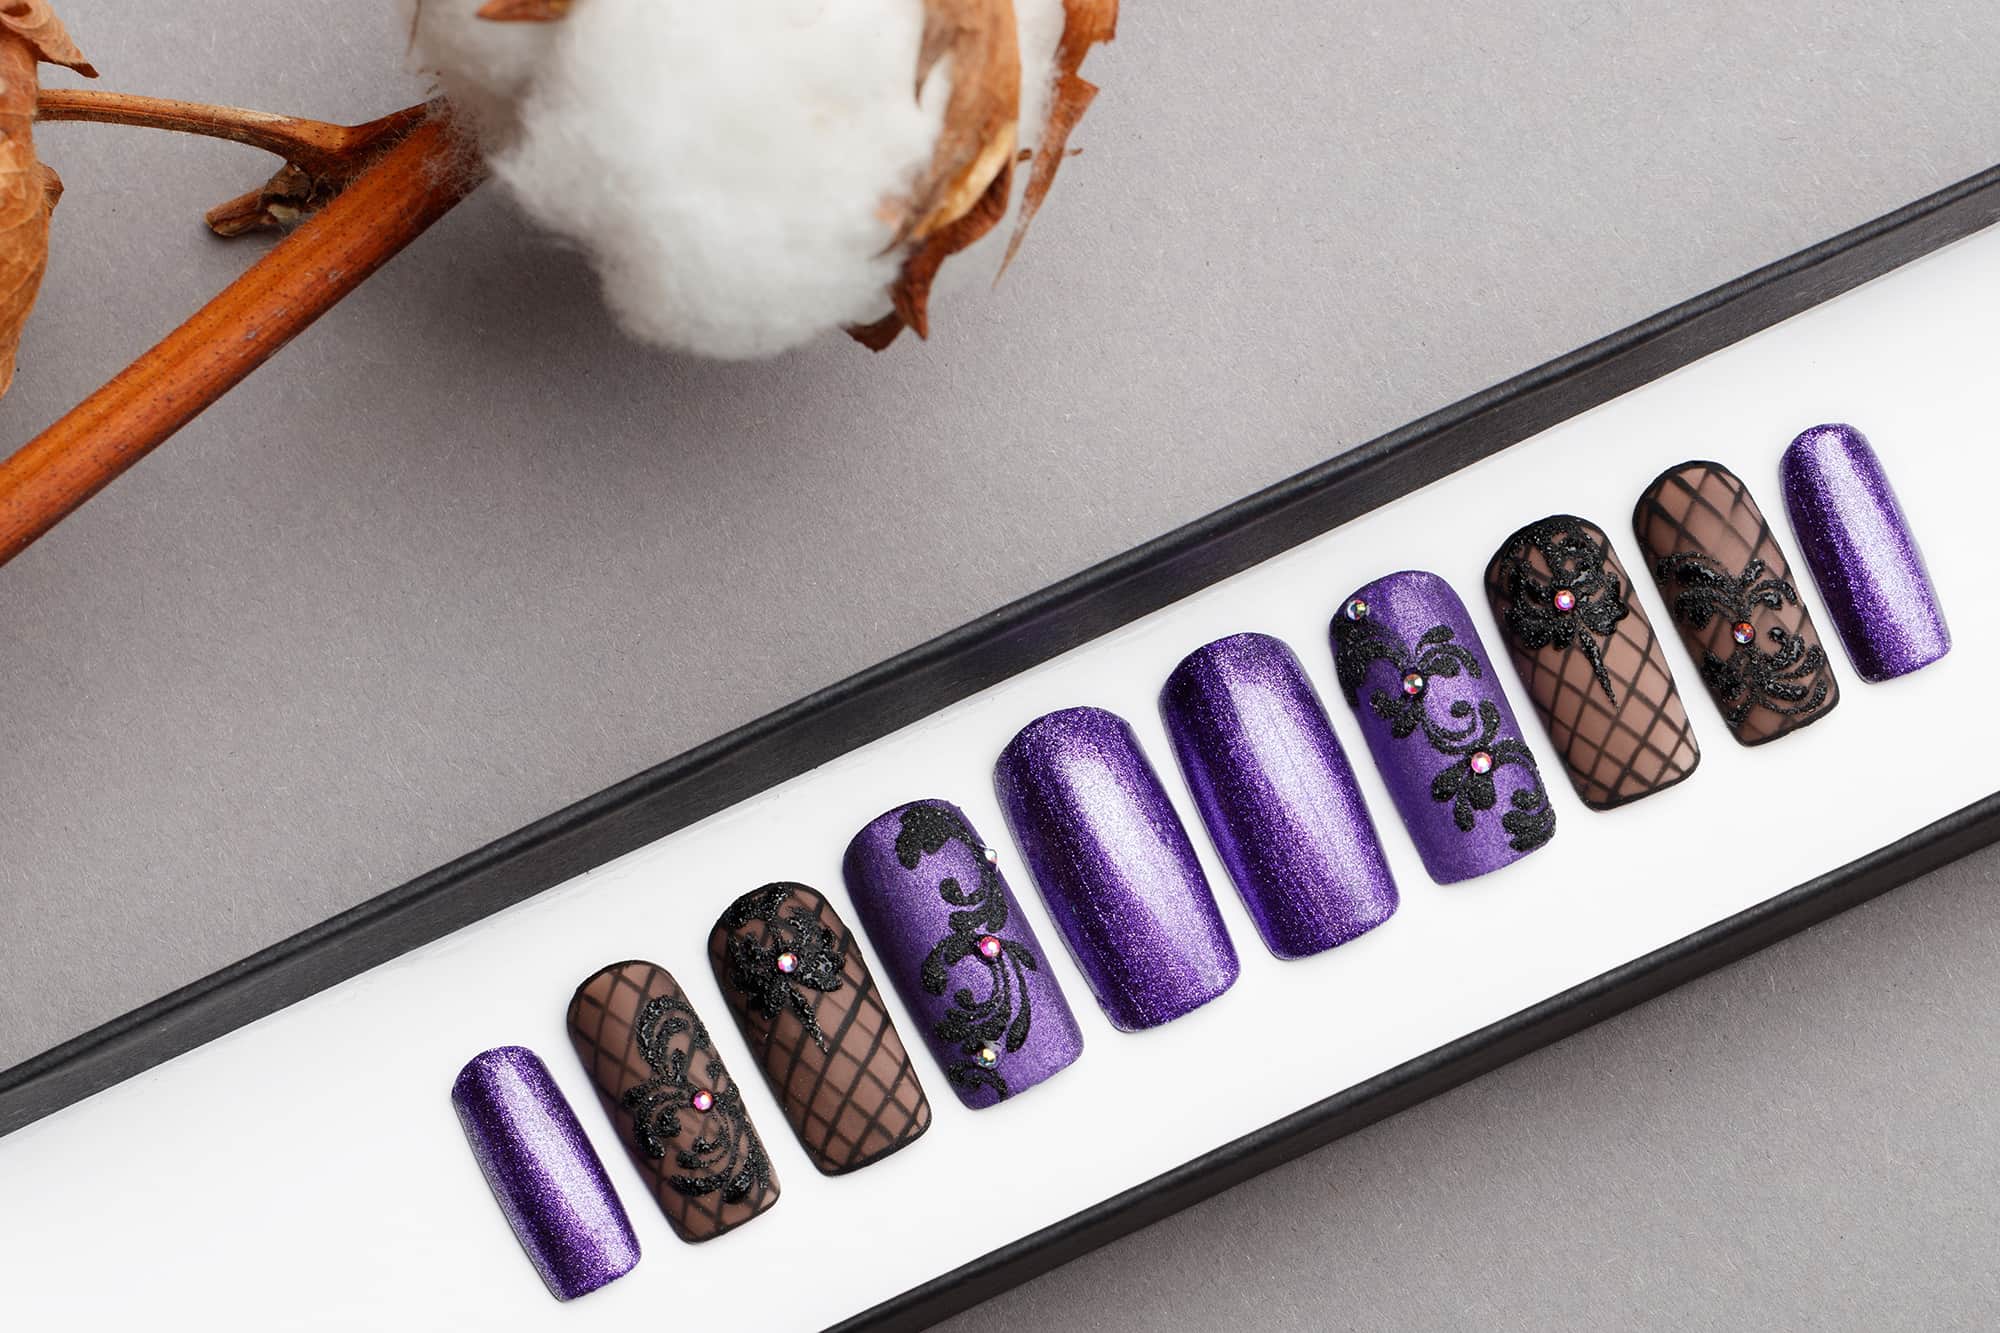 Violet Glitter Press on Nails with Swarovski Crystals | Black Pattern | Hand painted Nail Art | Fake Nails | False Nails